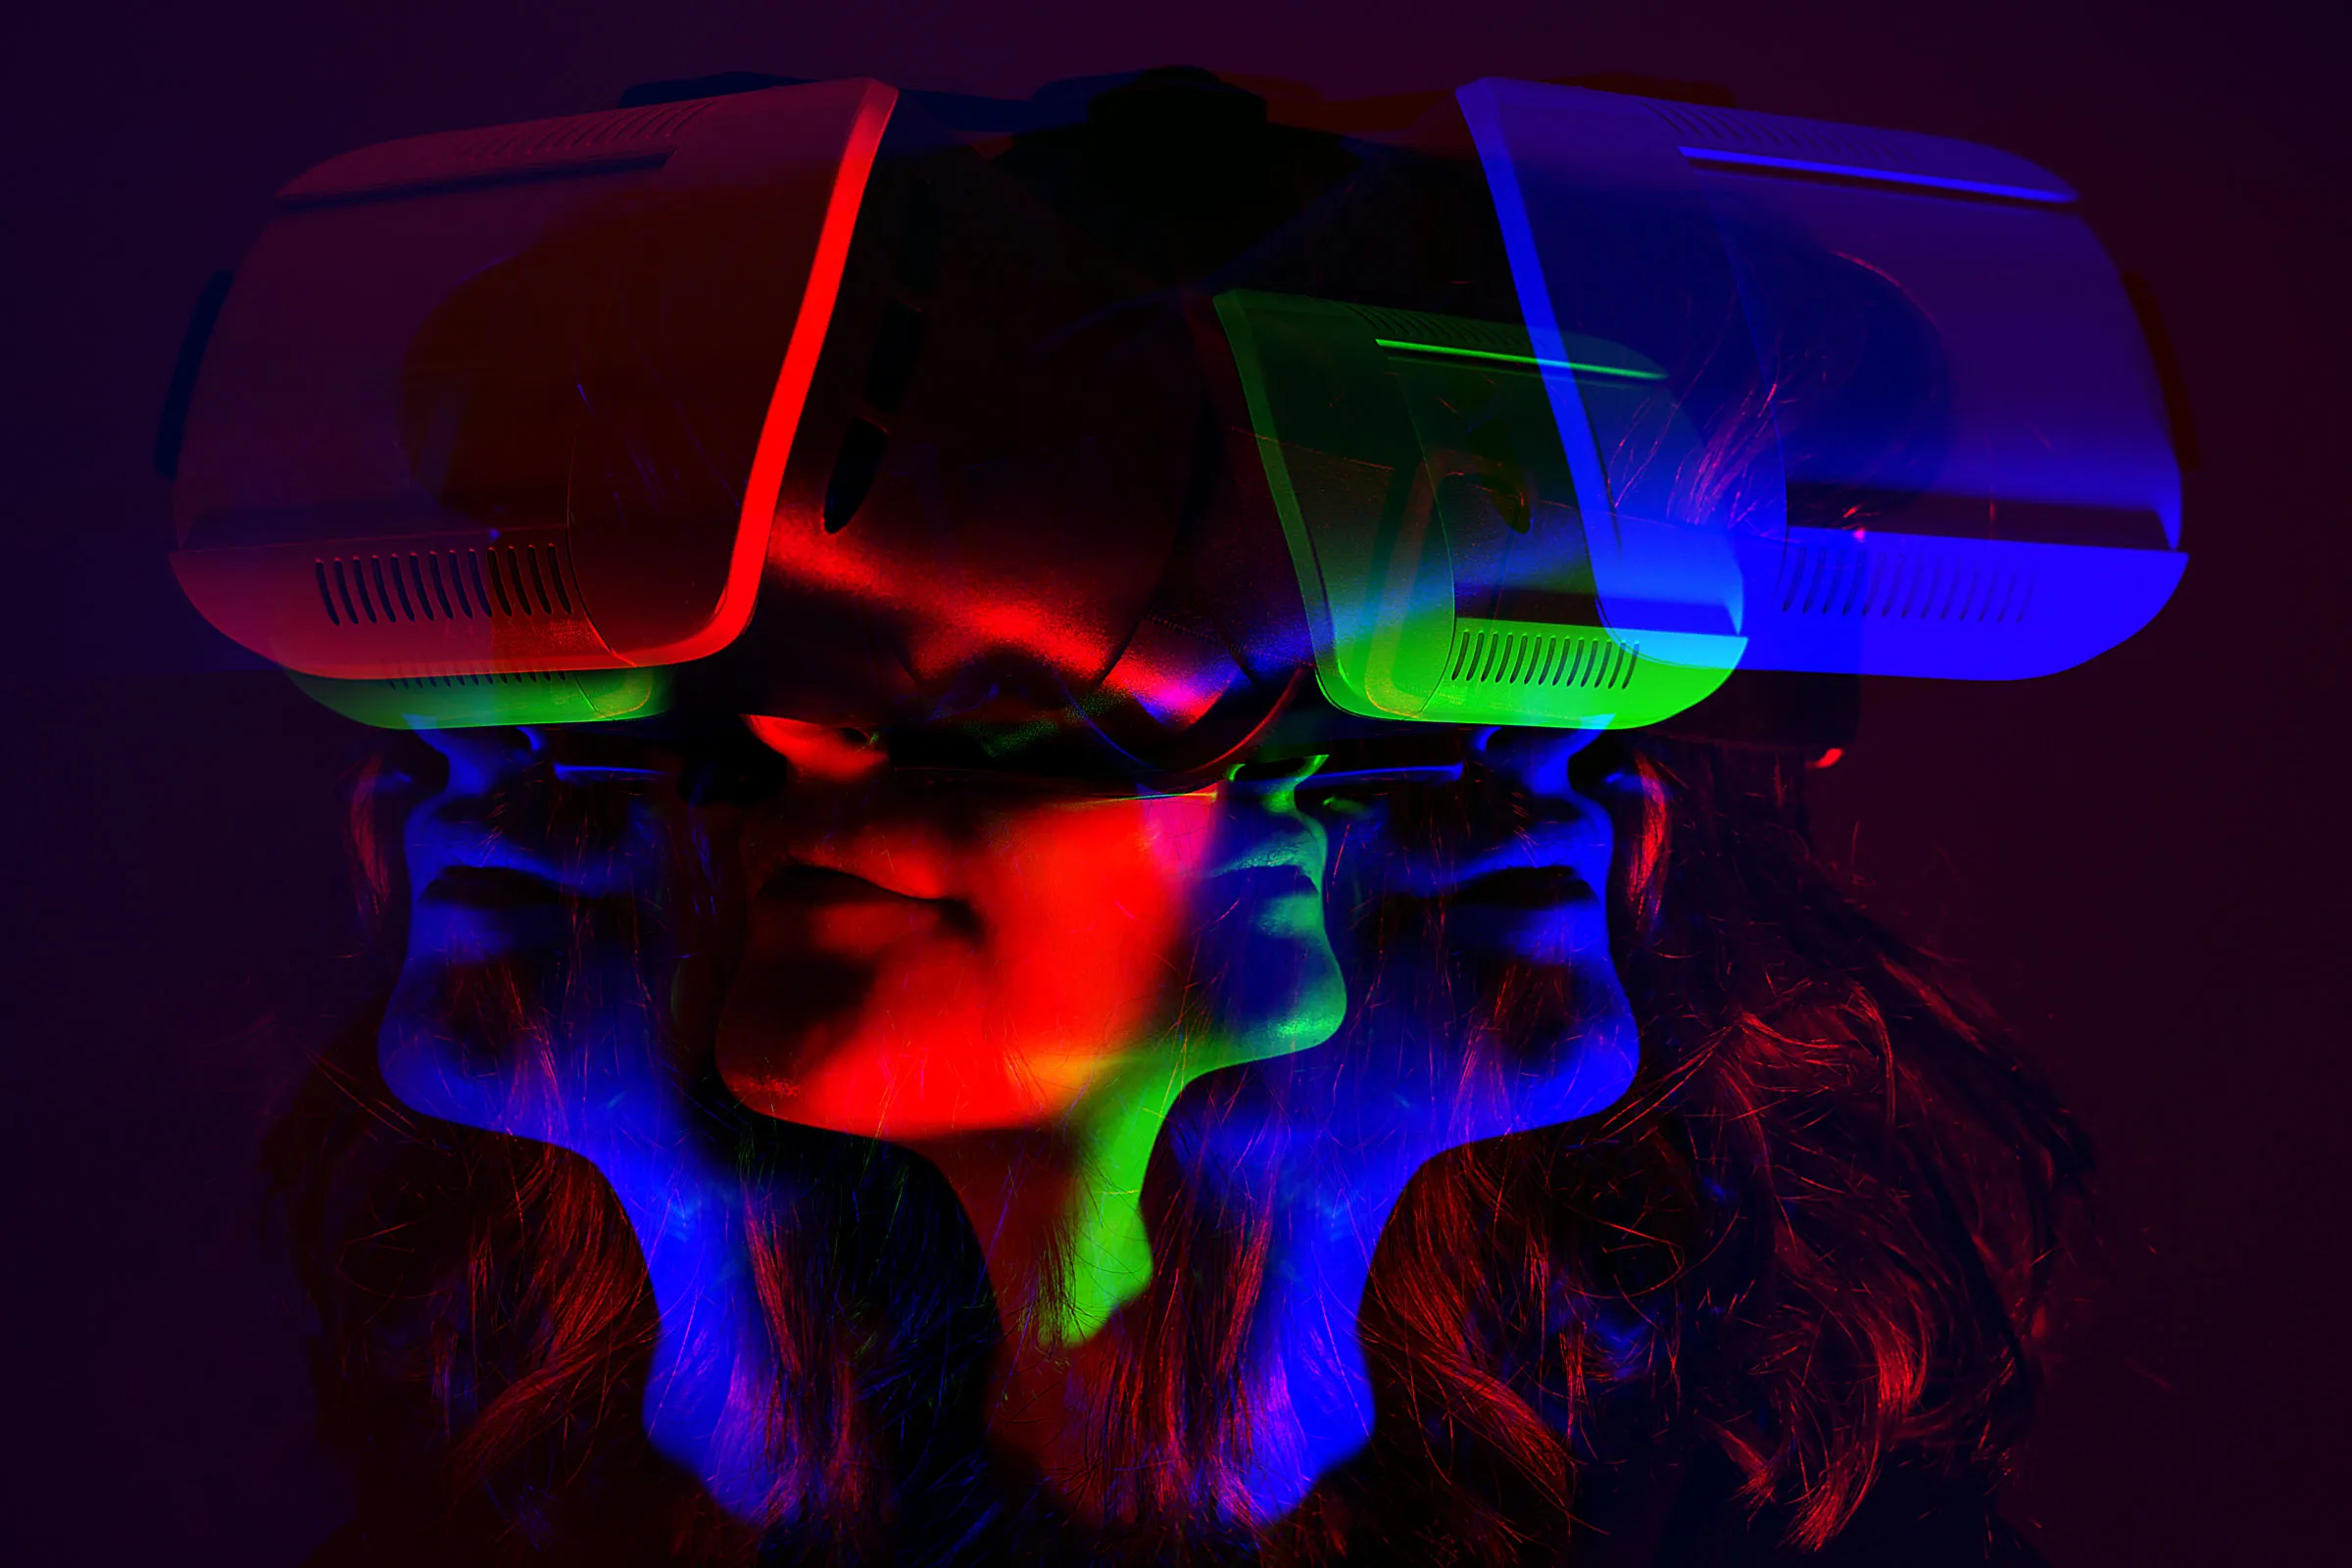 图片展示了一位佩戴虚拟现实头盔的人，头盔发出红蓝光影，形成了三重重叠的面孔错觉。